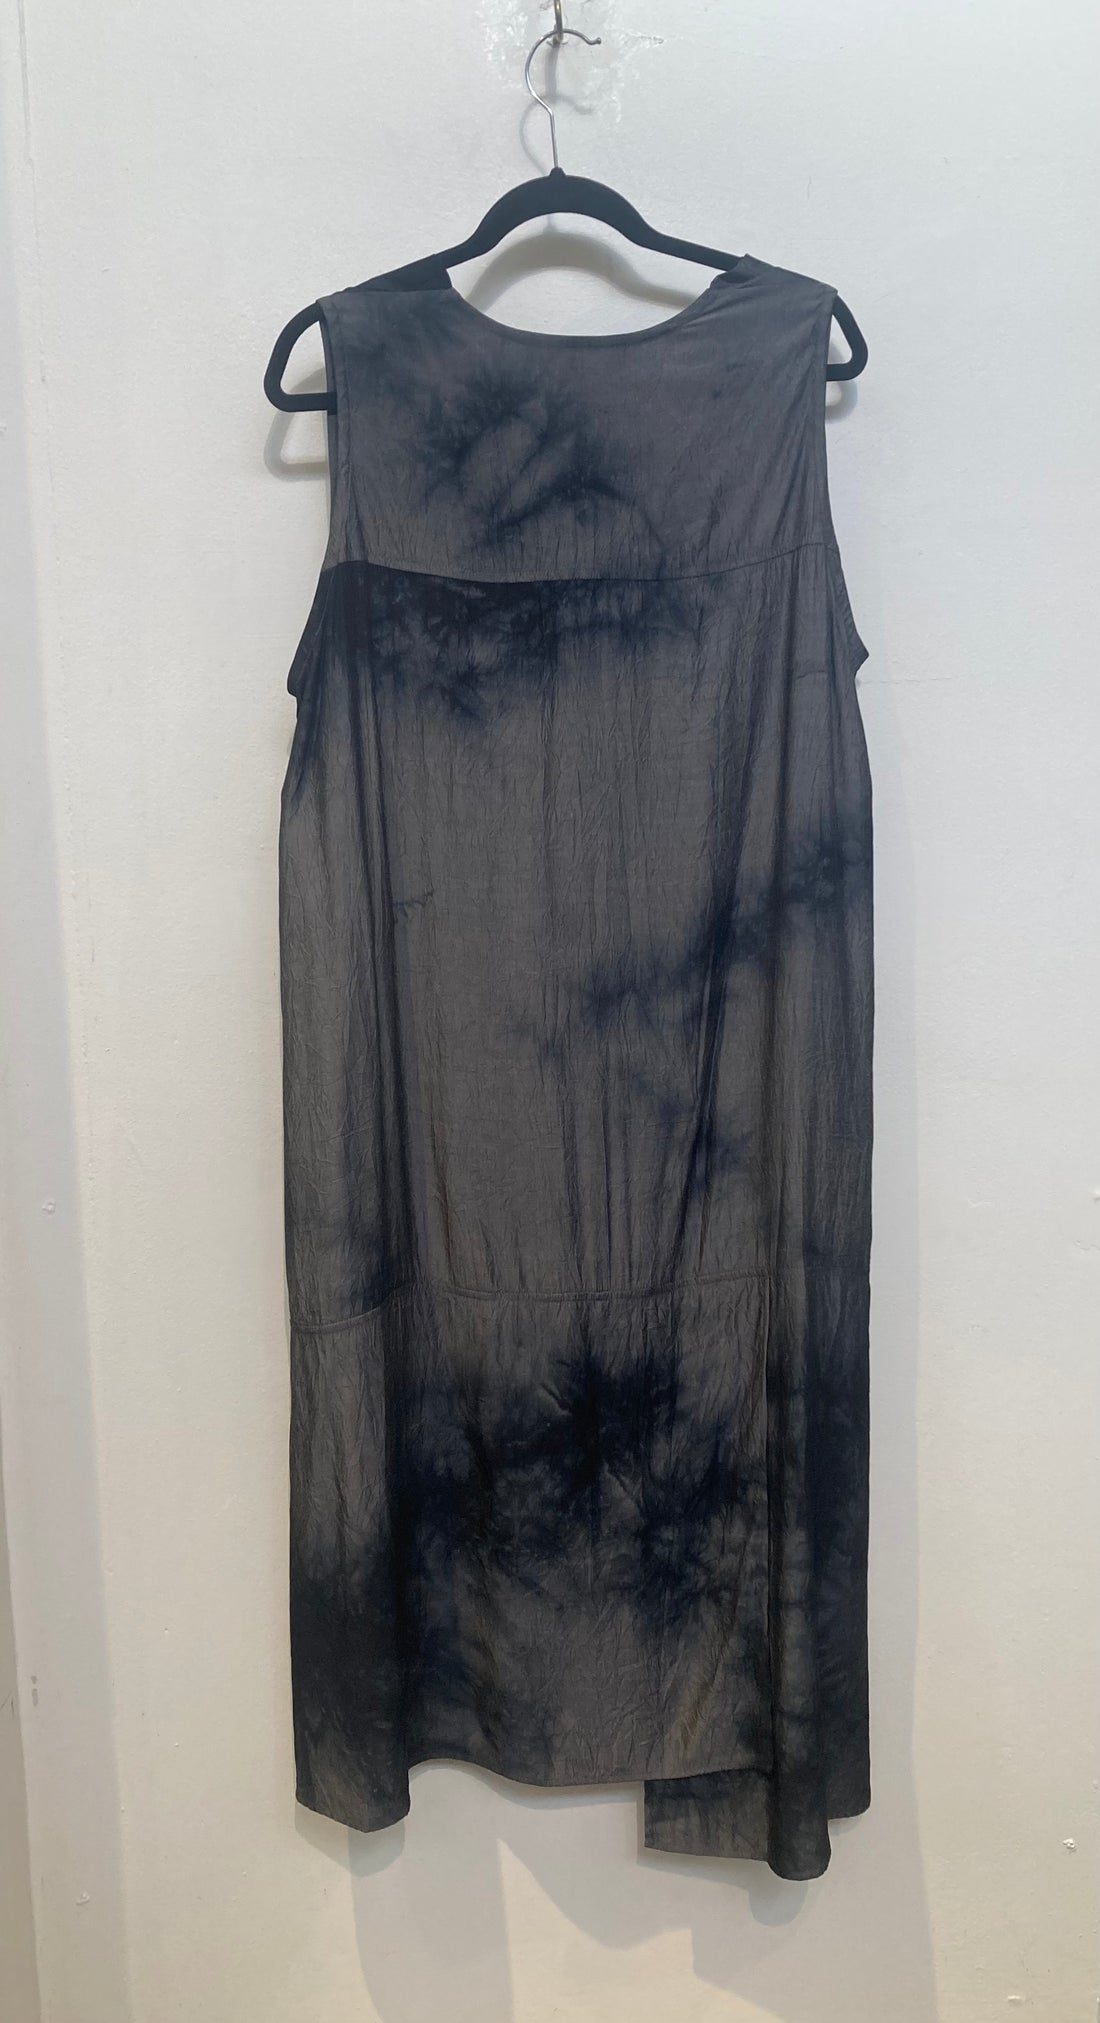 Grey & Black Tie-Dye Dress with Pockets